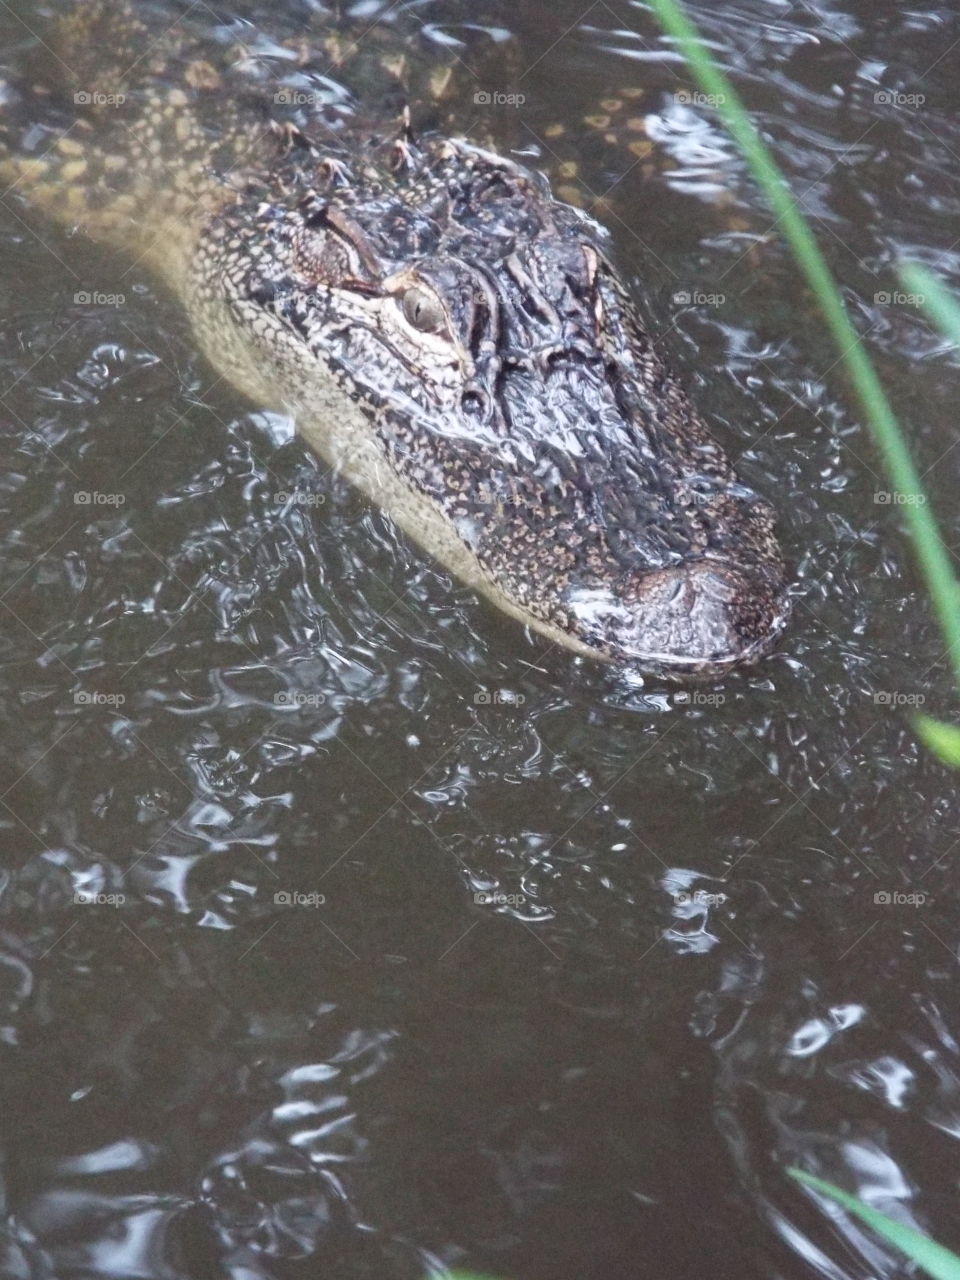 Alligator, Crocodile, Water, River, Nature